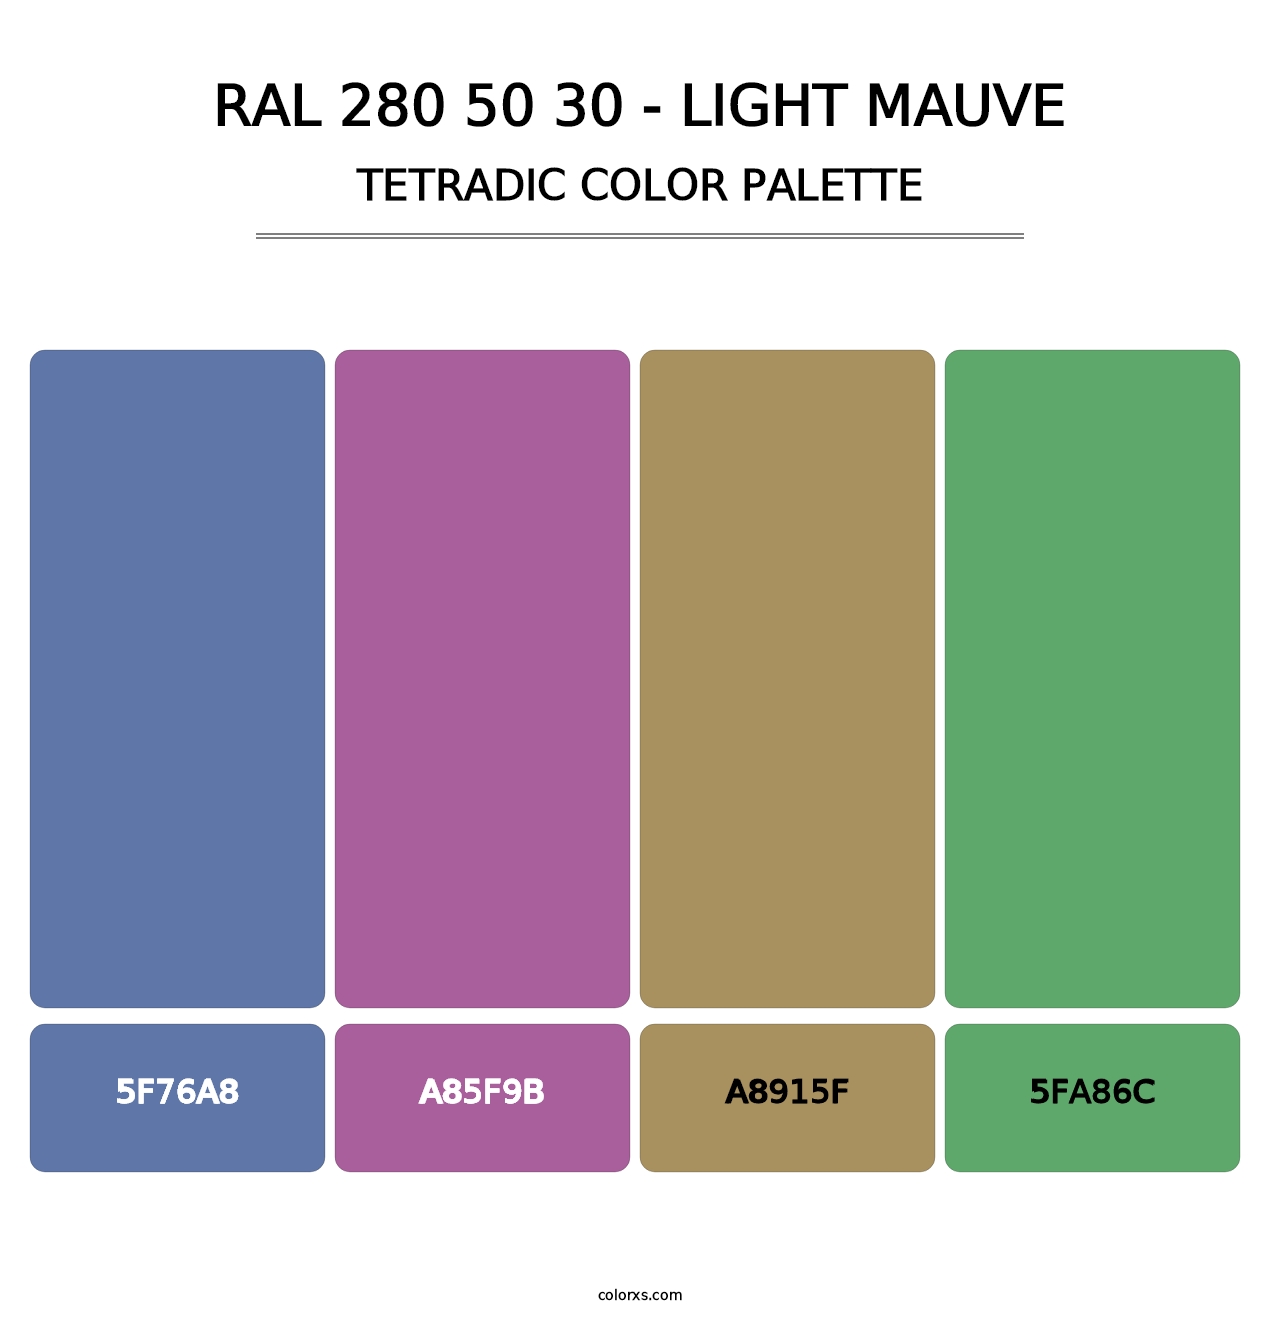 RAL 280 50 30 - Light Mauve - Tetradic Color Palette